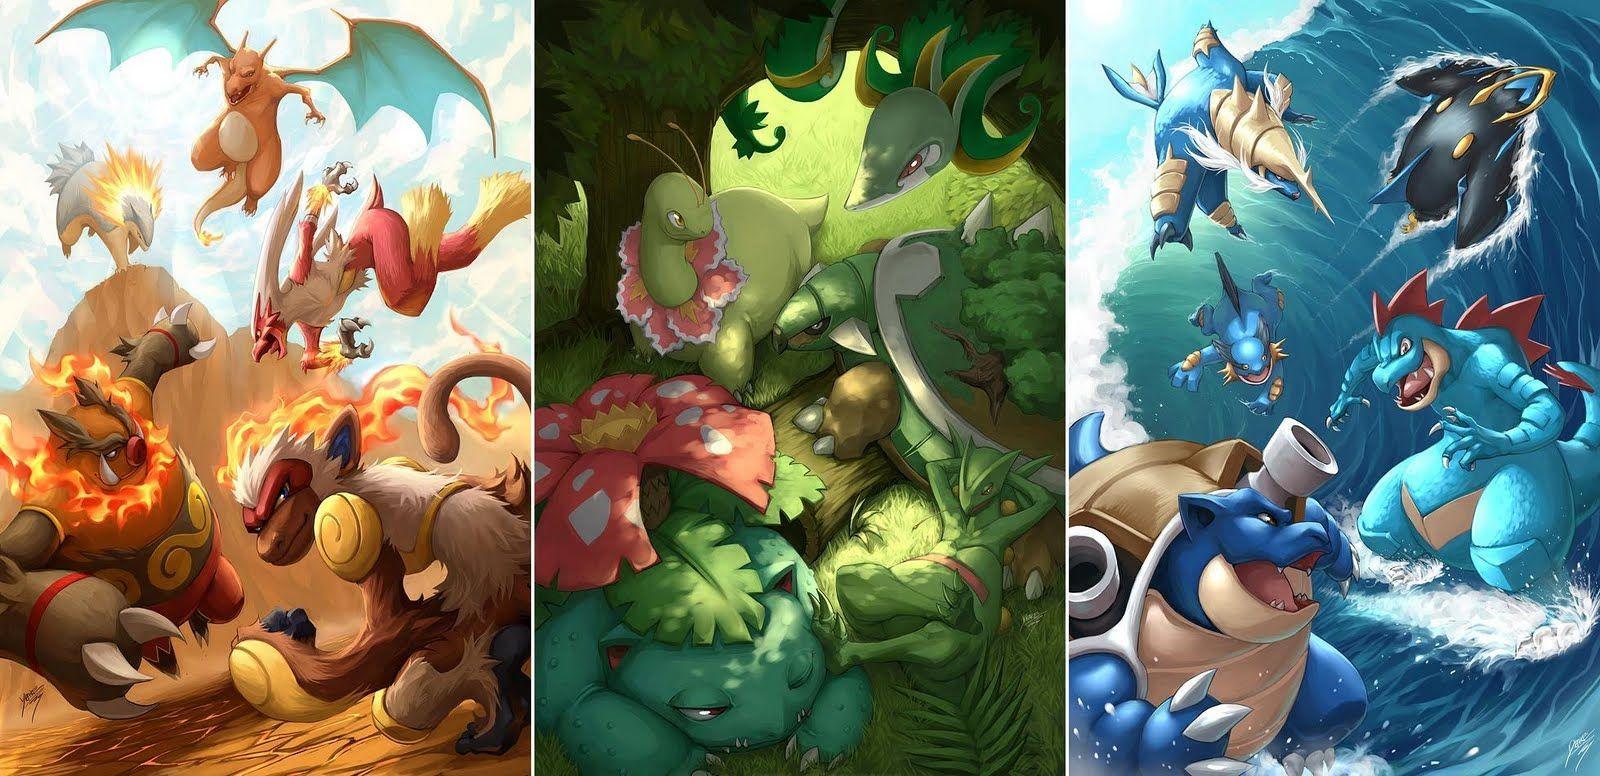 Awesome Pokemon Wallpaper